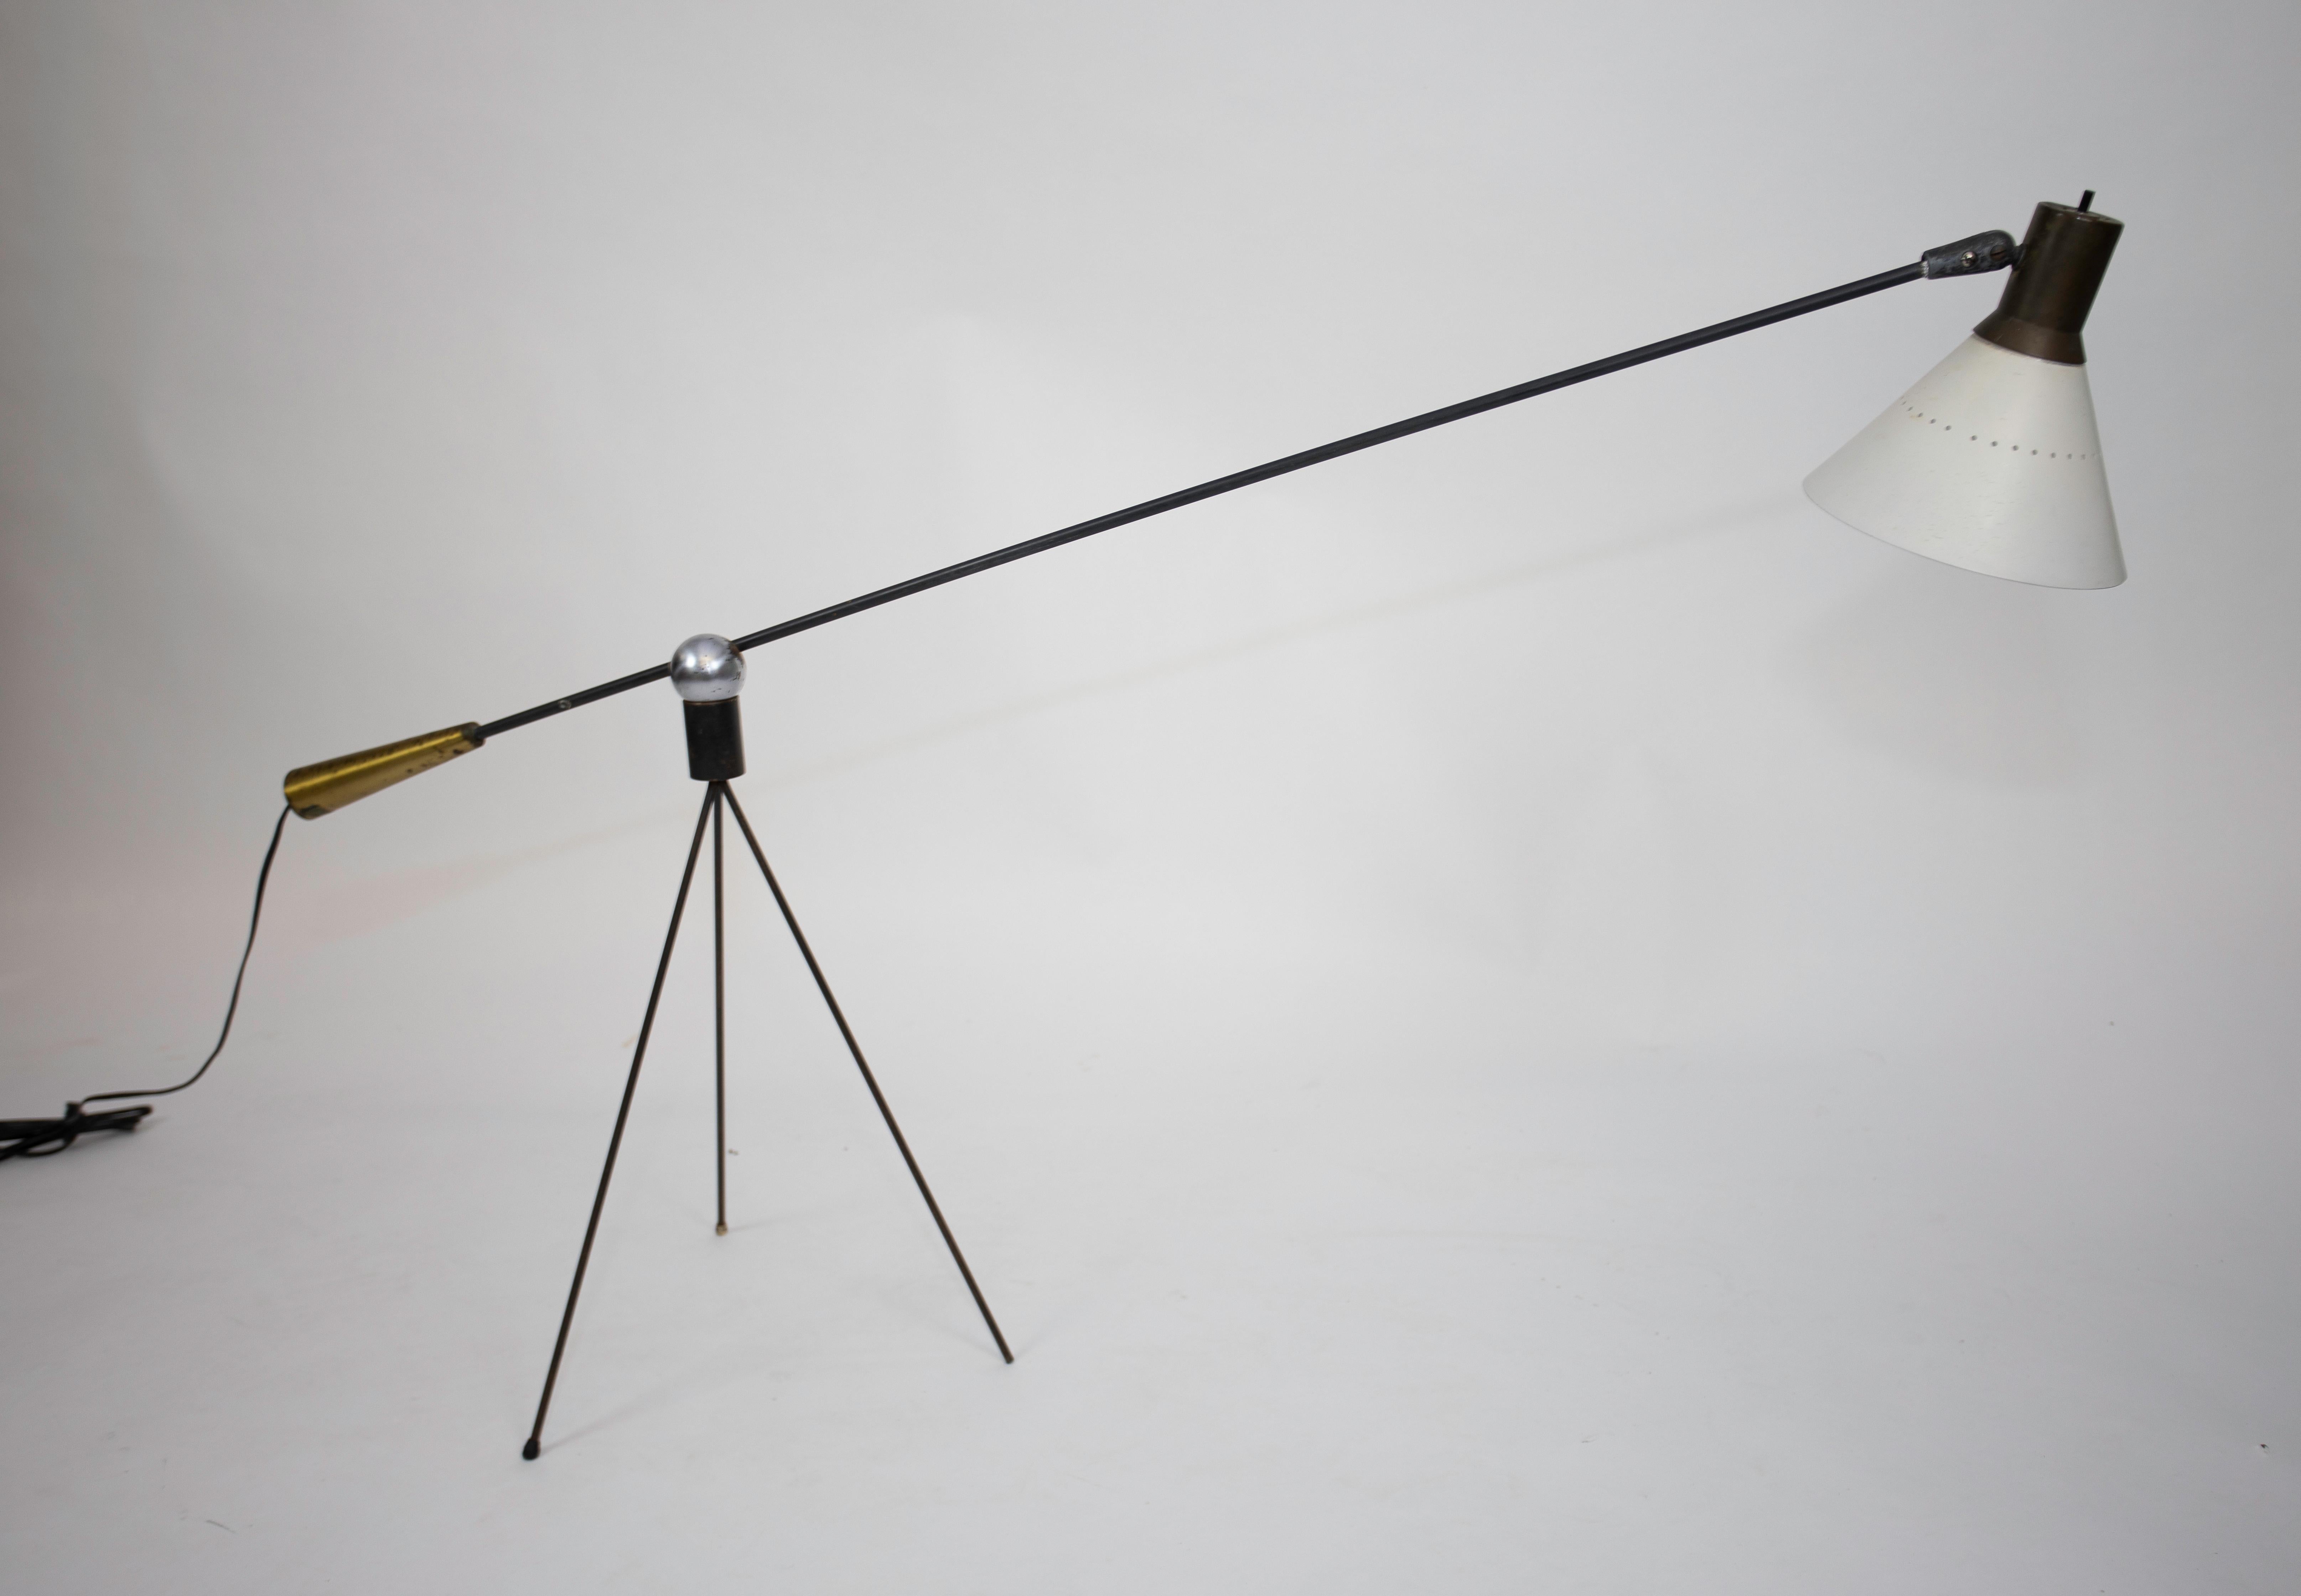 Choisie pour être l'une des 10 lampes du concours d'éclairage du Musée d'art moderne, 1951
Cette conception a reçu la désignation de prix spécial
Le socle est magnétique, ce qui permet d'adopter plusieurs hauteurs et positions
Surface